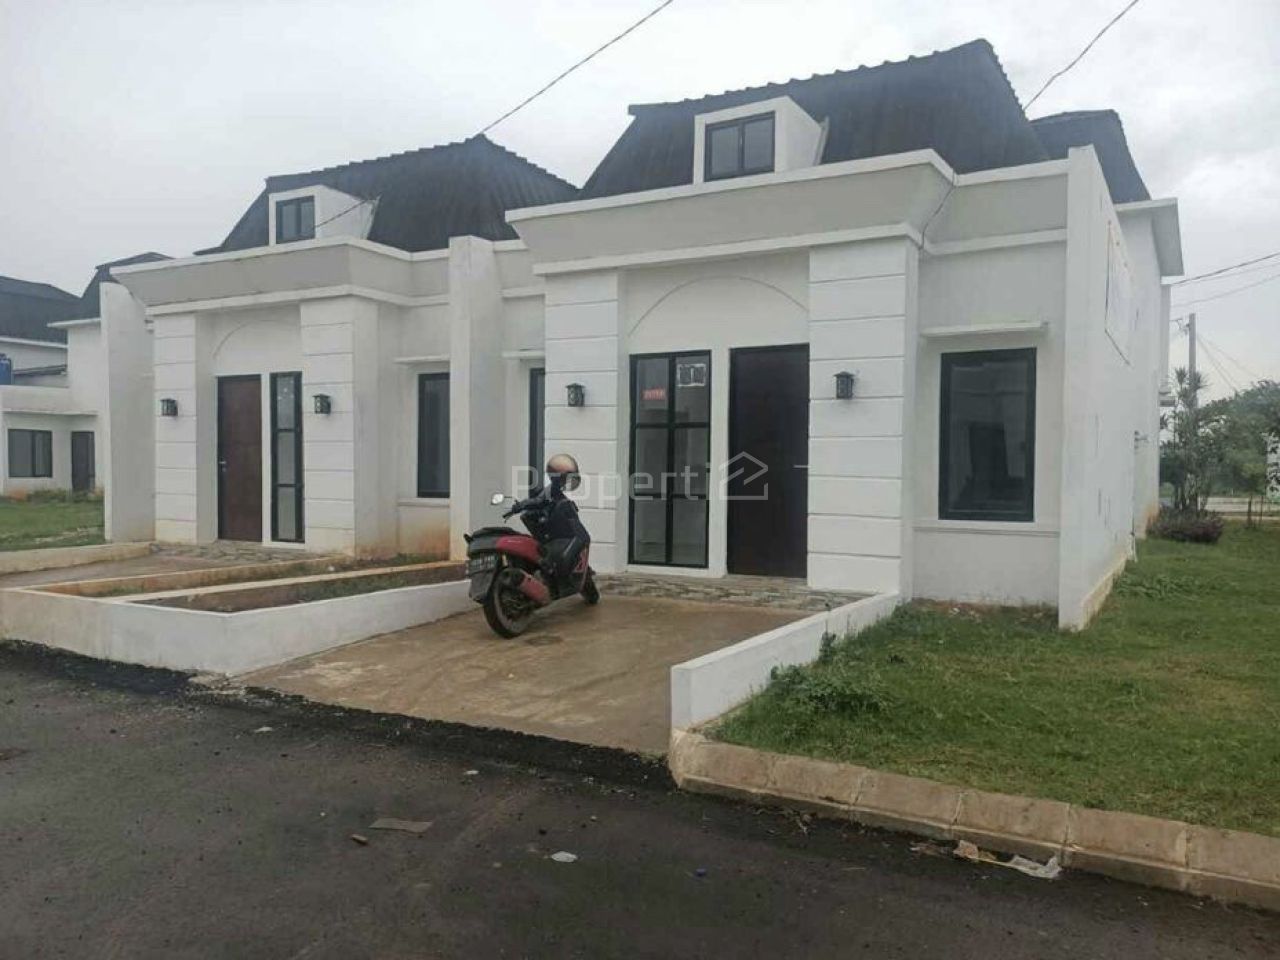 New House in Cibitung, Bekasi, Jawa Barat